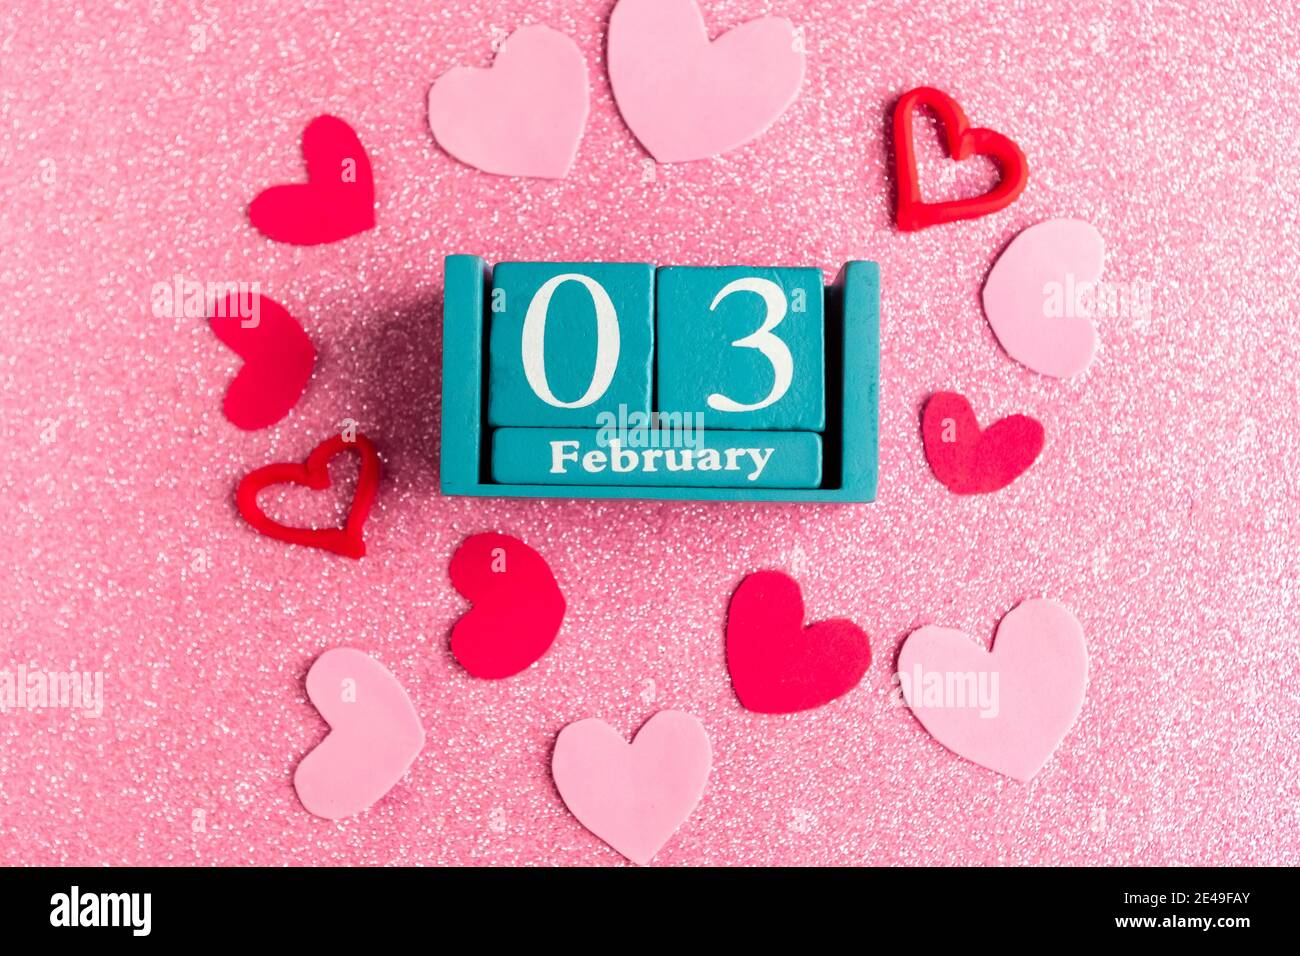 Février 3. Calendrier cube bleu avec mois et date et décorations sur fond rose scintillant. Banque D'Images